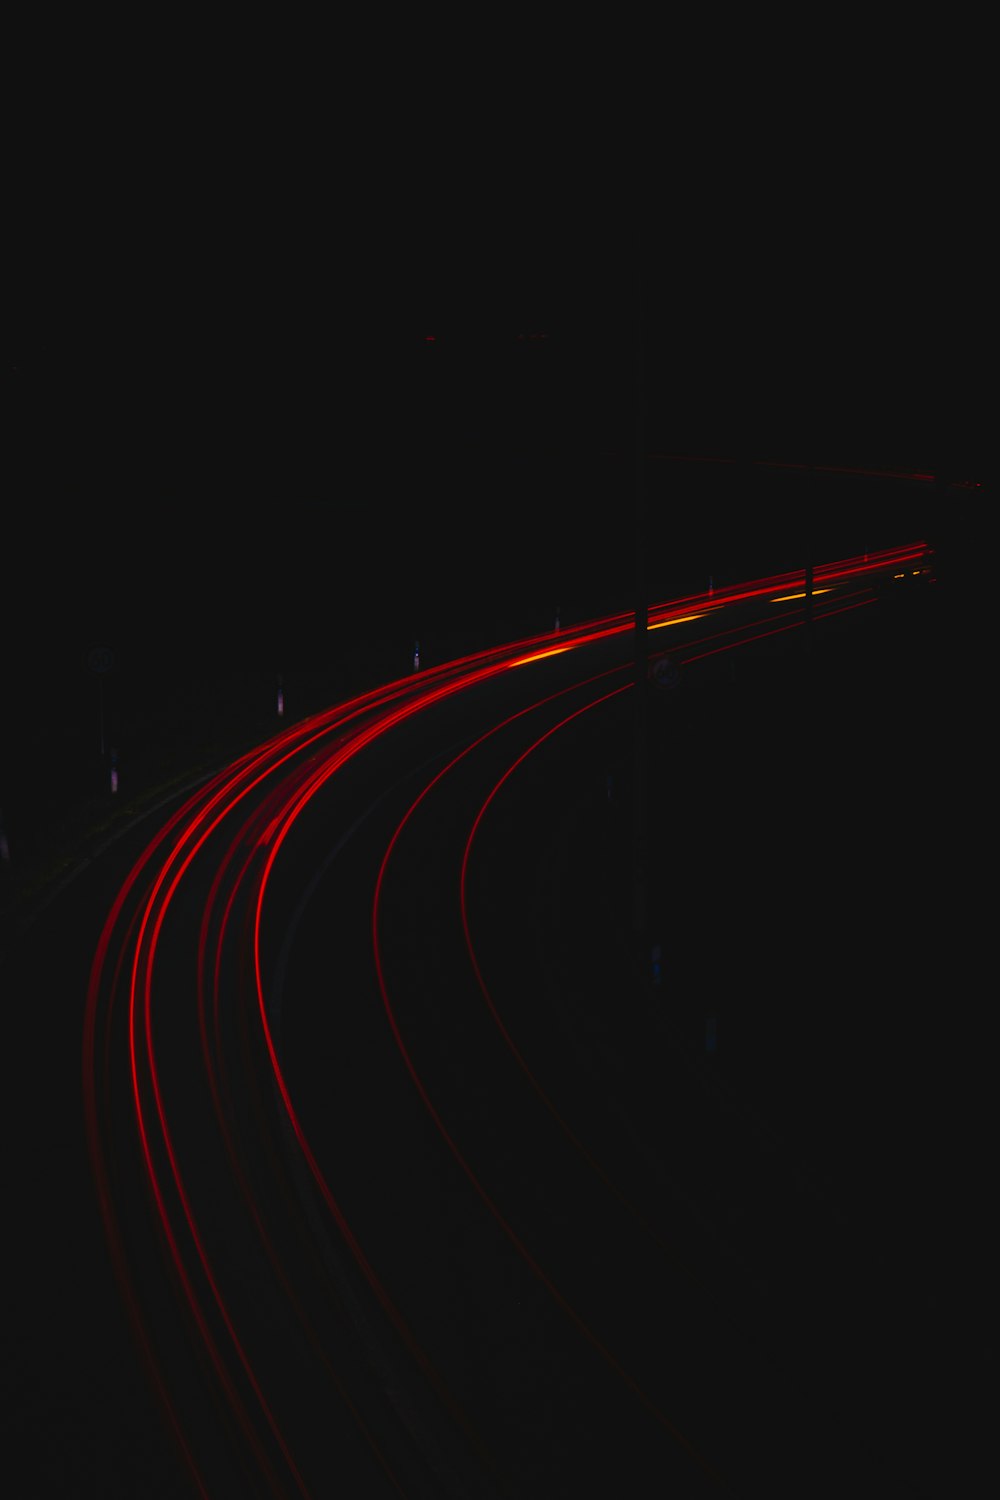 red light streaks on black background